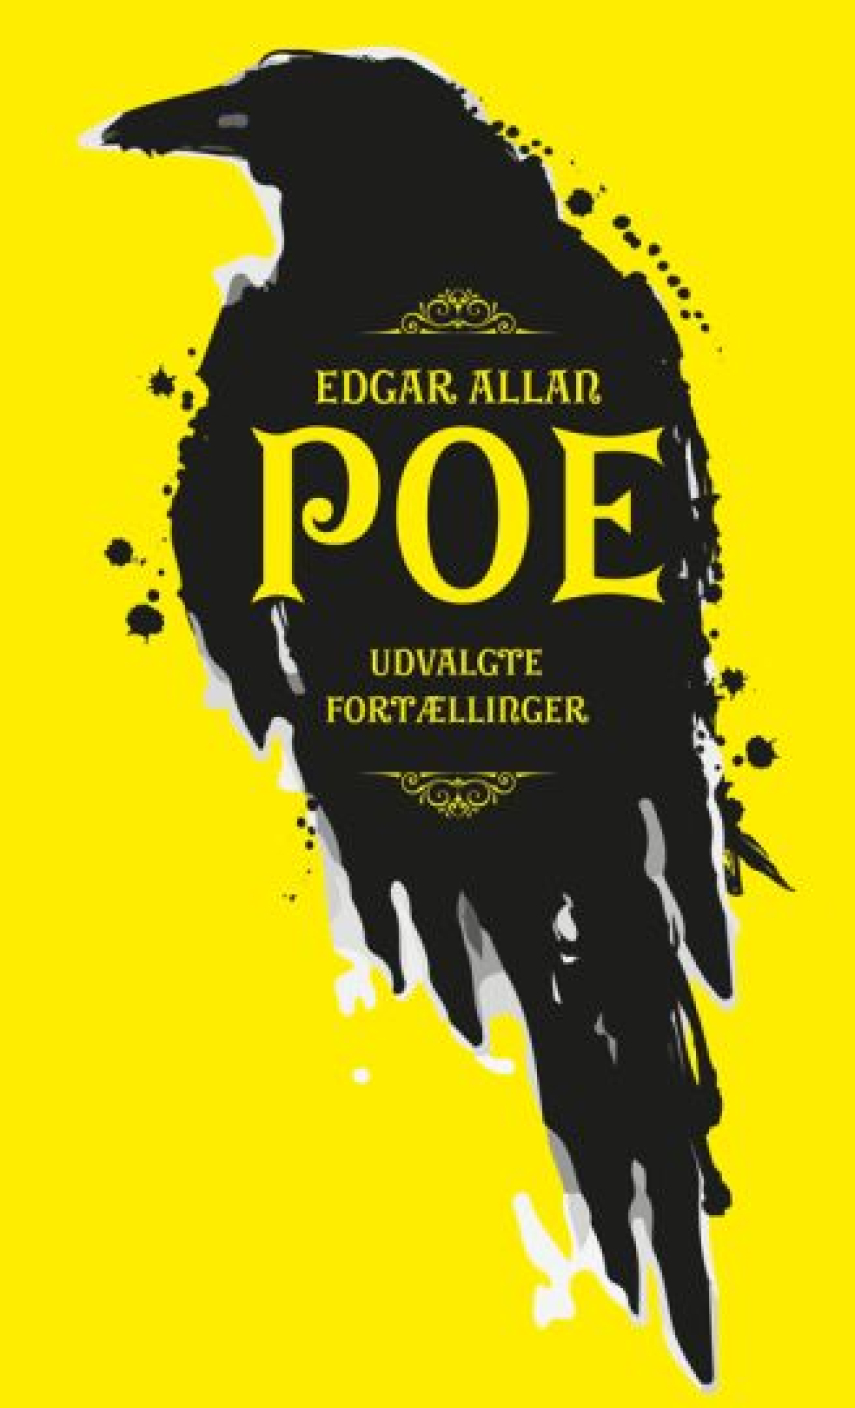 Edgar Allan Poe: Udvalgte fortællinger